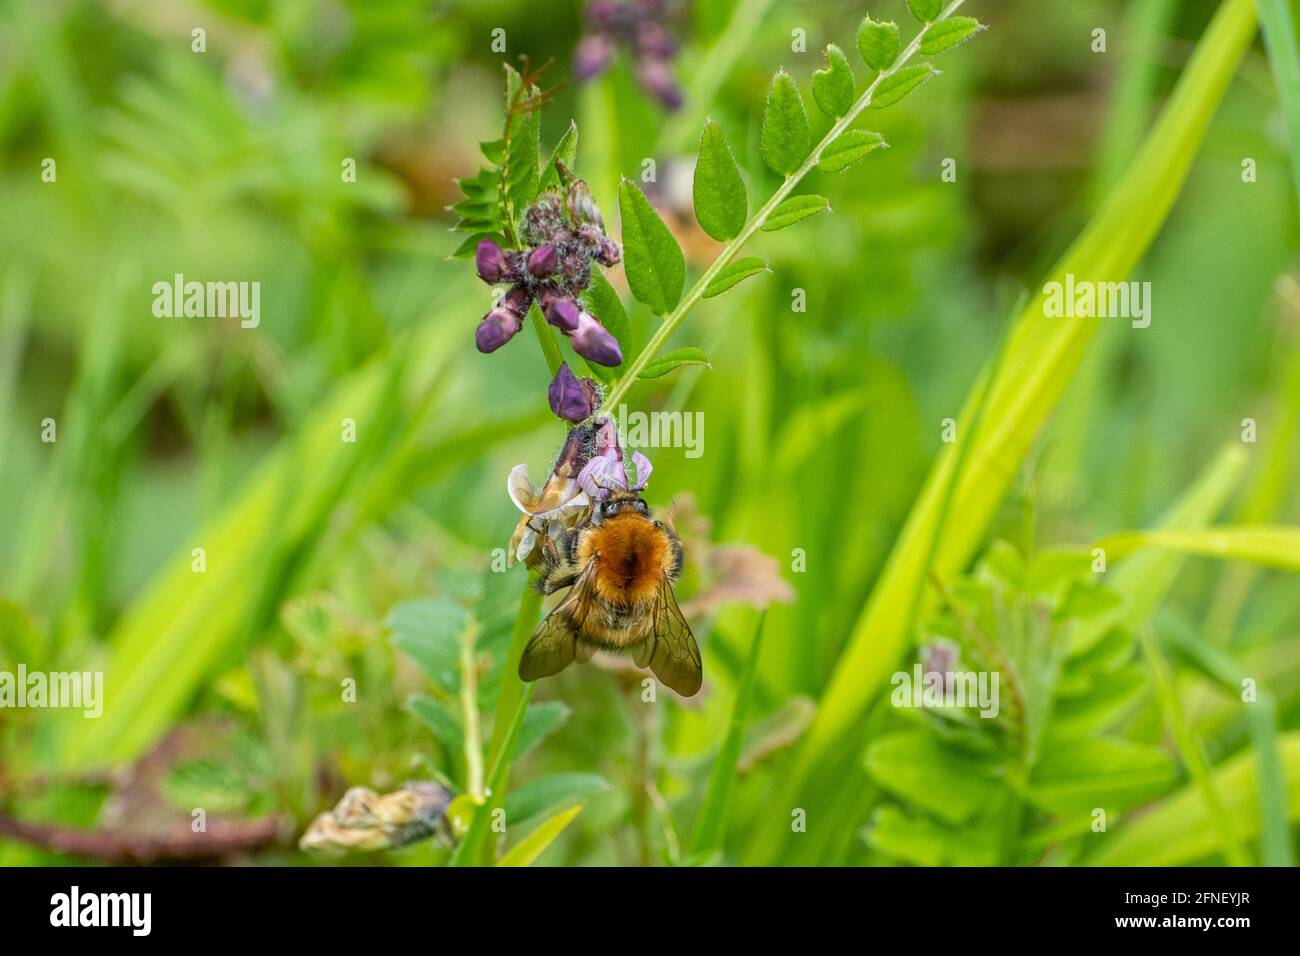 L'abeille commune (Bombus pascuorum) se nourrissant du nectar de fleurs sauvages de la fée du Bush (Vicia sepium) en mai ou au printemps, au Royaume-Uni Banque D'Images